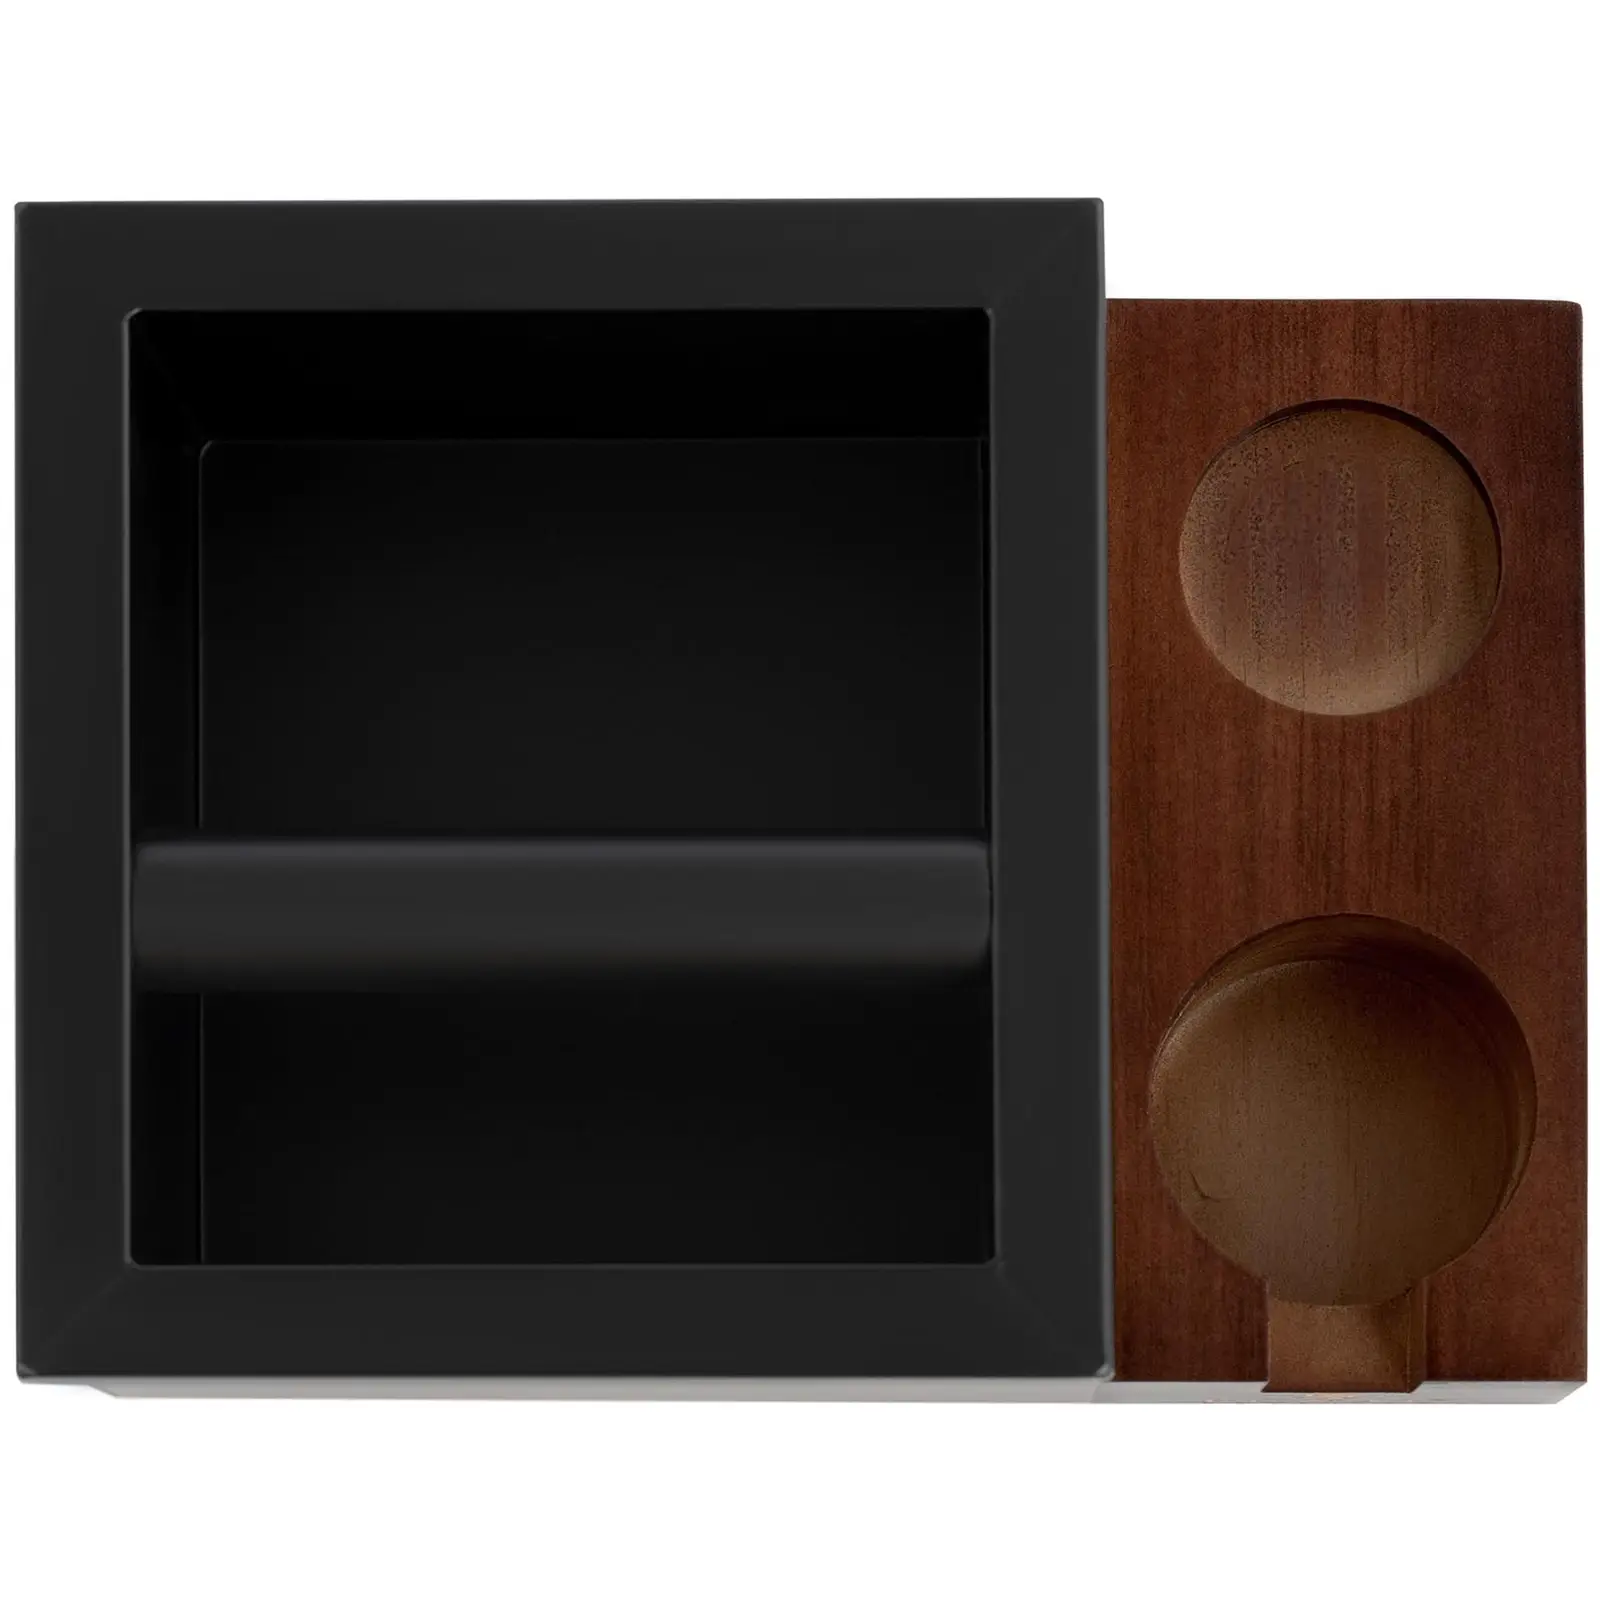 Caja para posos de café - Acero inoxidable / madera - 3,1 L - Con barra de golpeo y compartimento para accesorios - Royal Catering